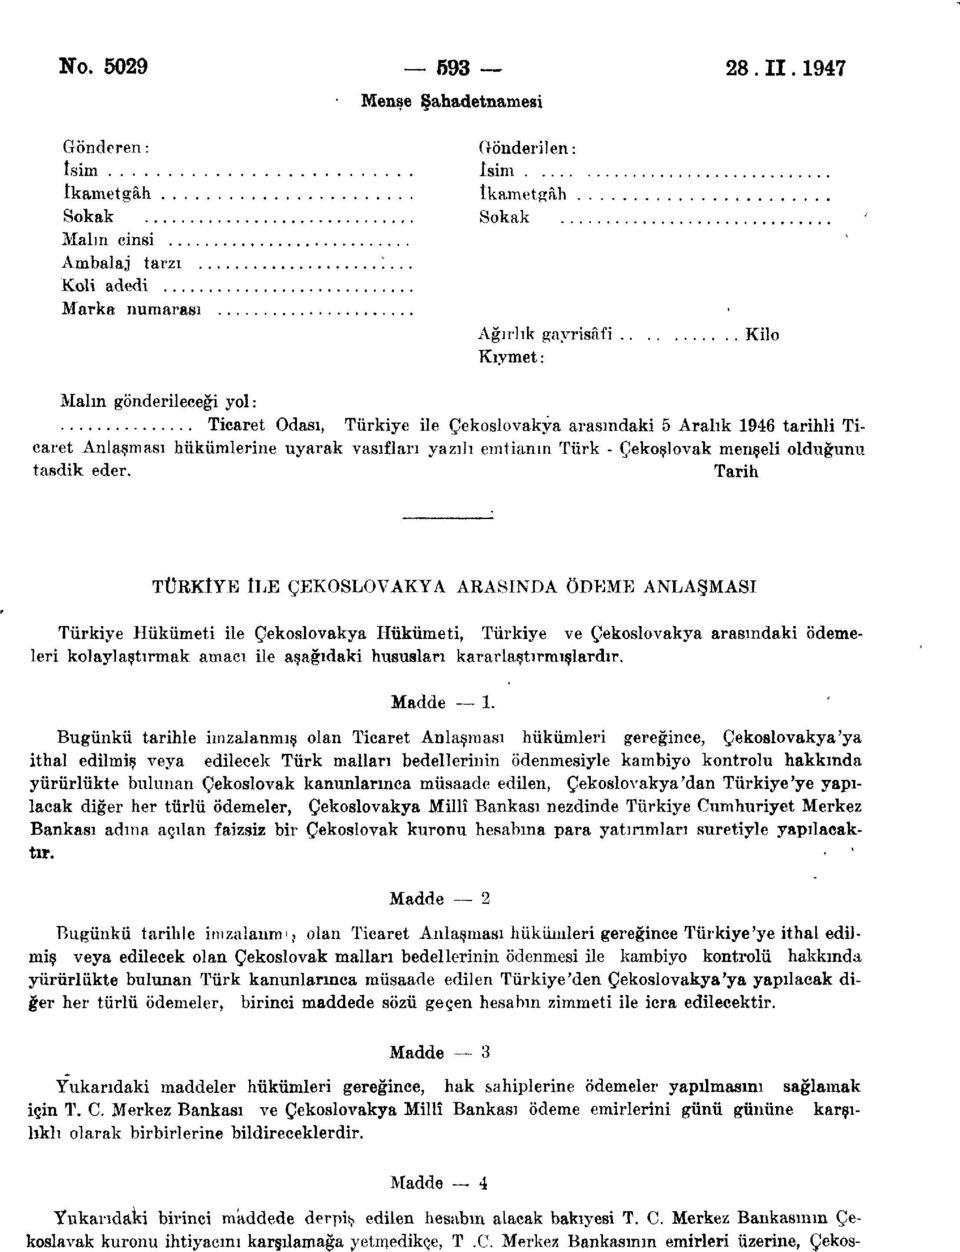 Anlaşması hükümlerine uyarak vasıfları yazılı emtianın Türk - Çekoslovak menşeli olduğunu tasdik eder.